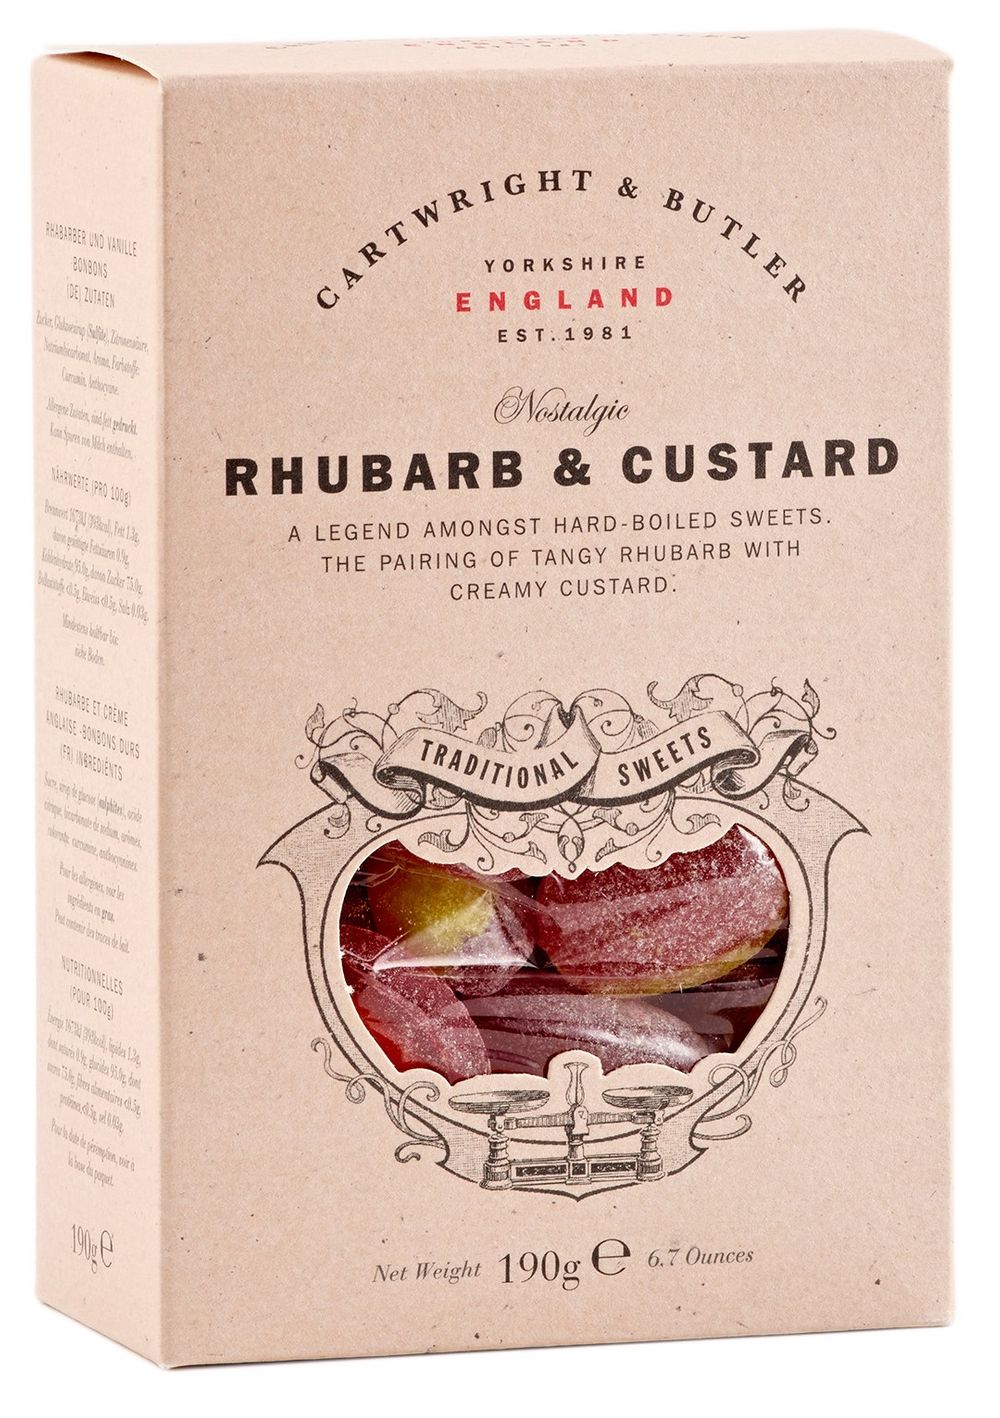 Rhubarb & Custard Sweets